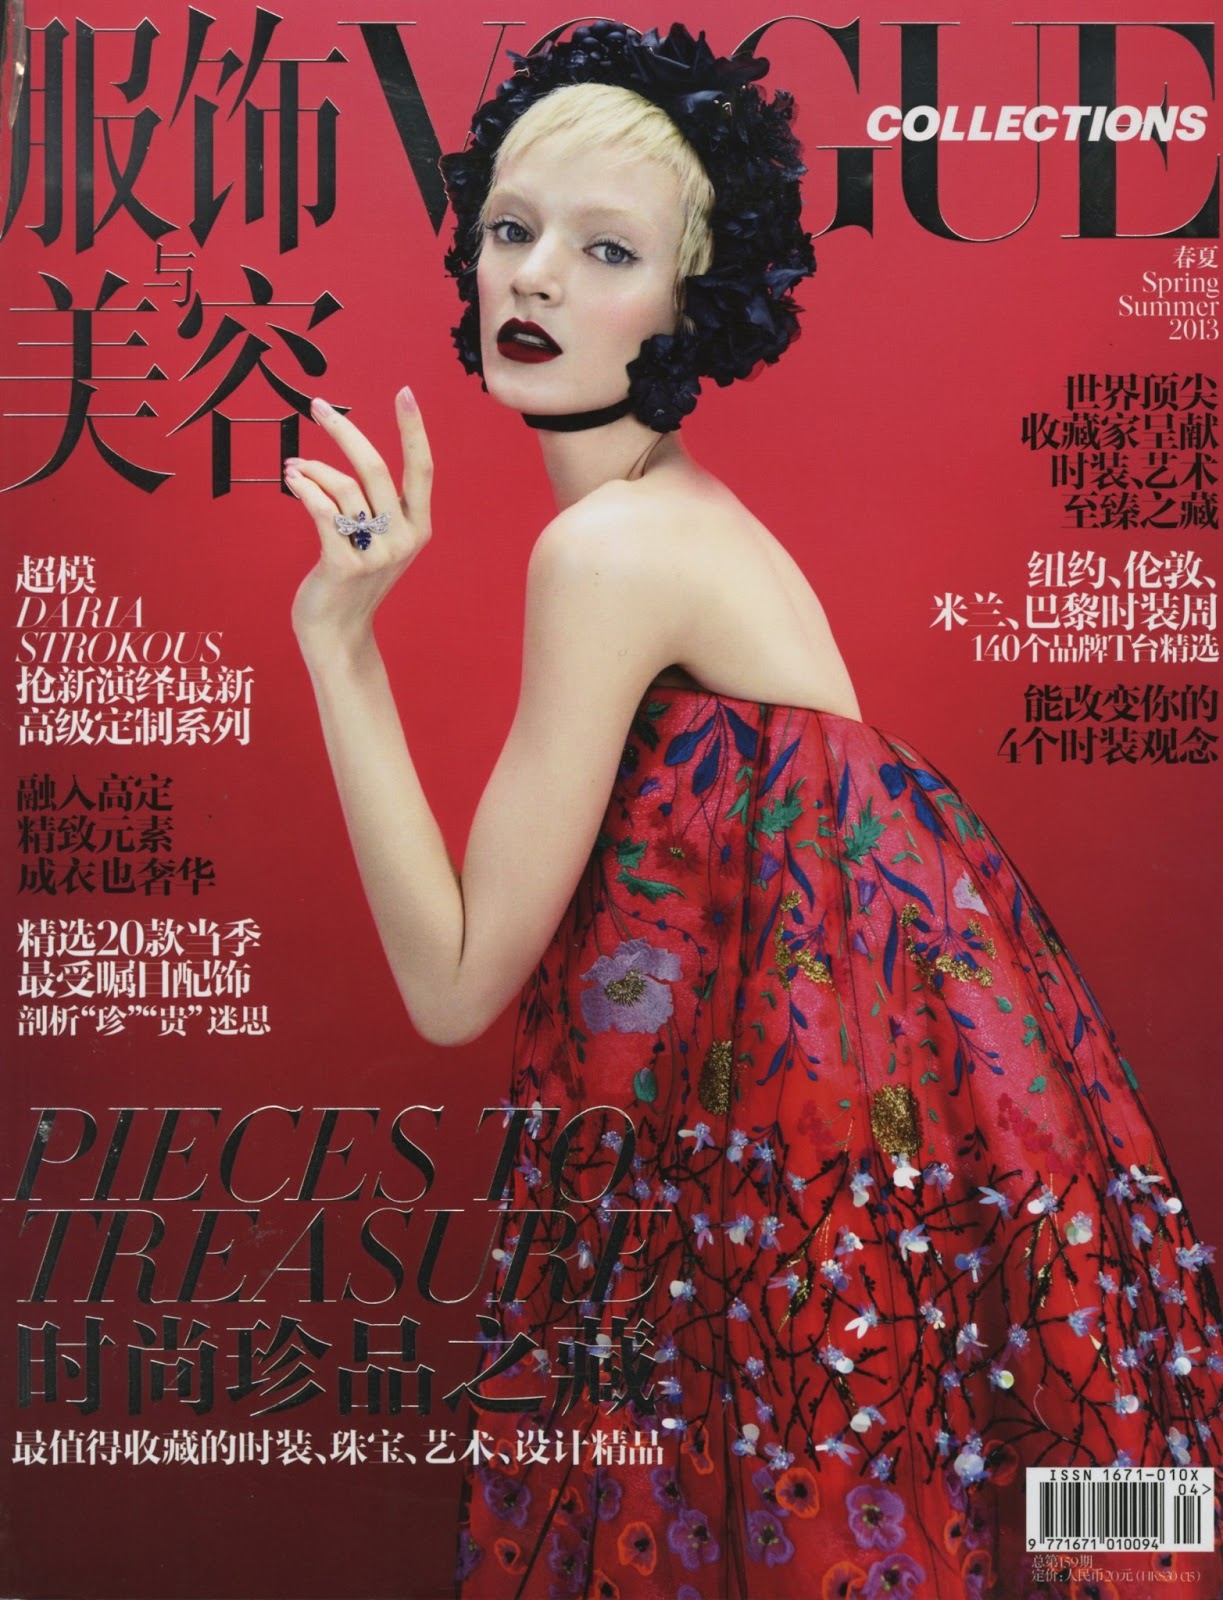 Vogue collection. Vogue China Fashion обложка.